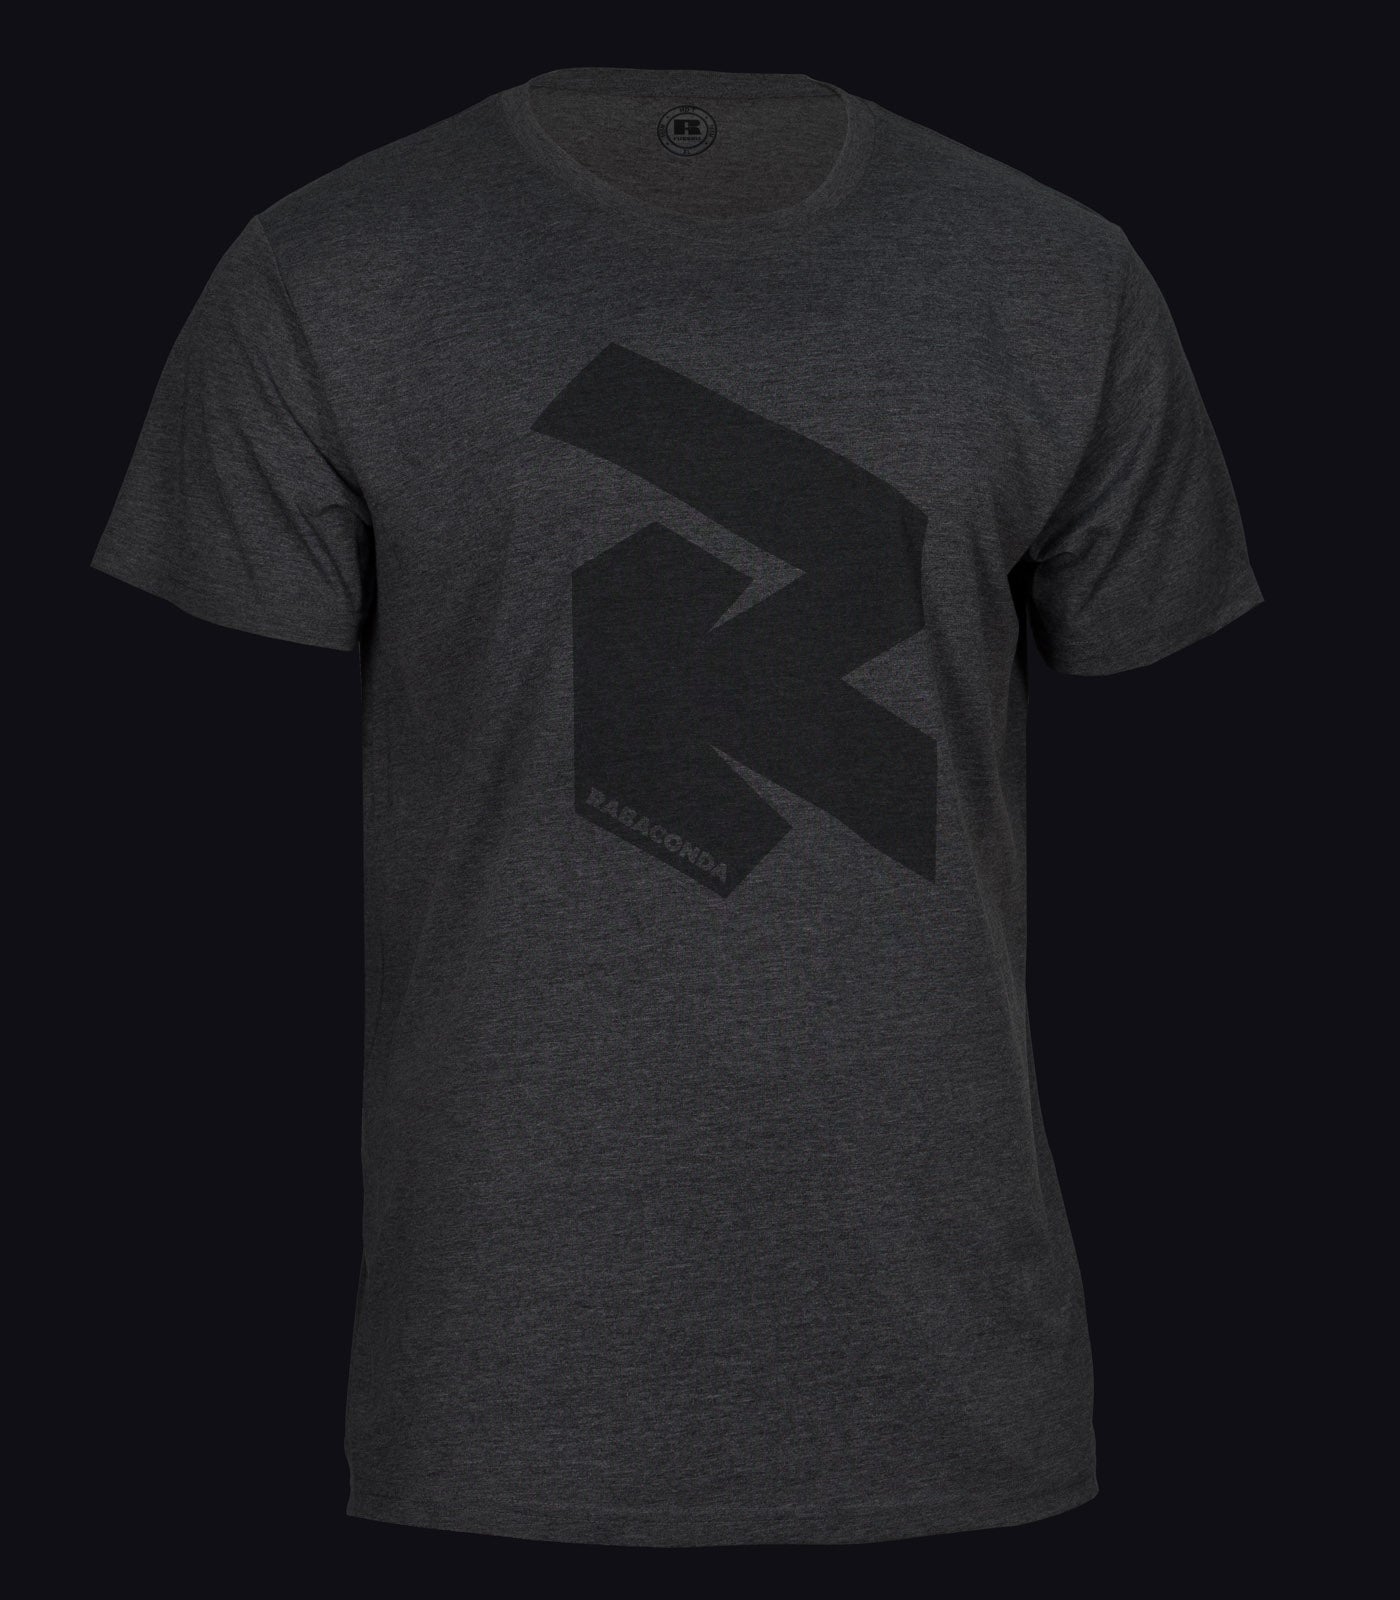 RabacondaRipperT-shirt-1.jpg